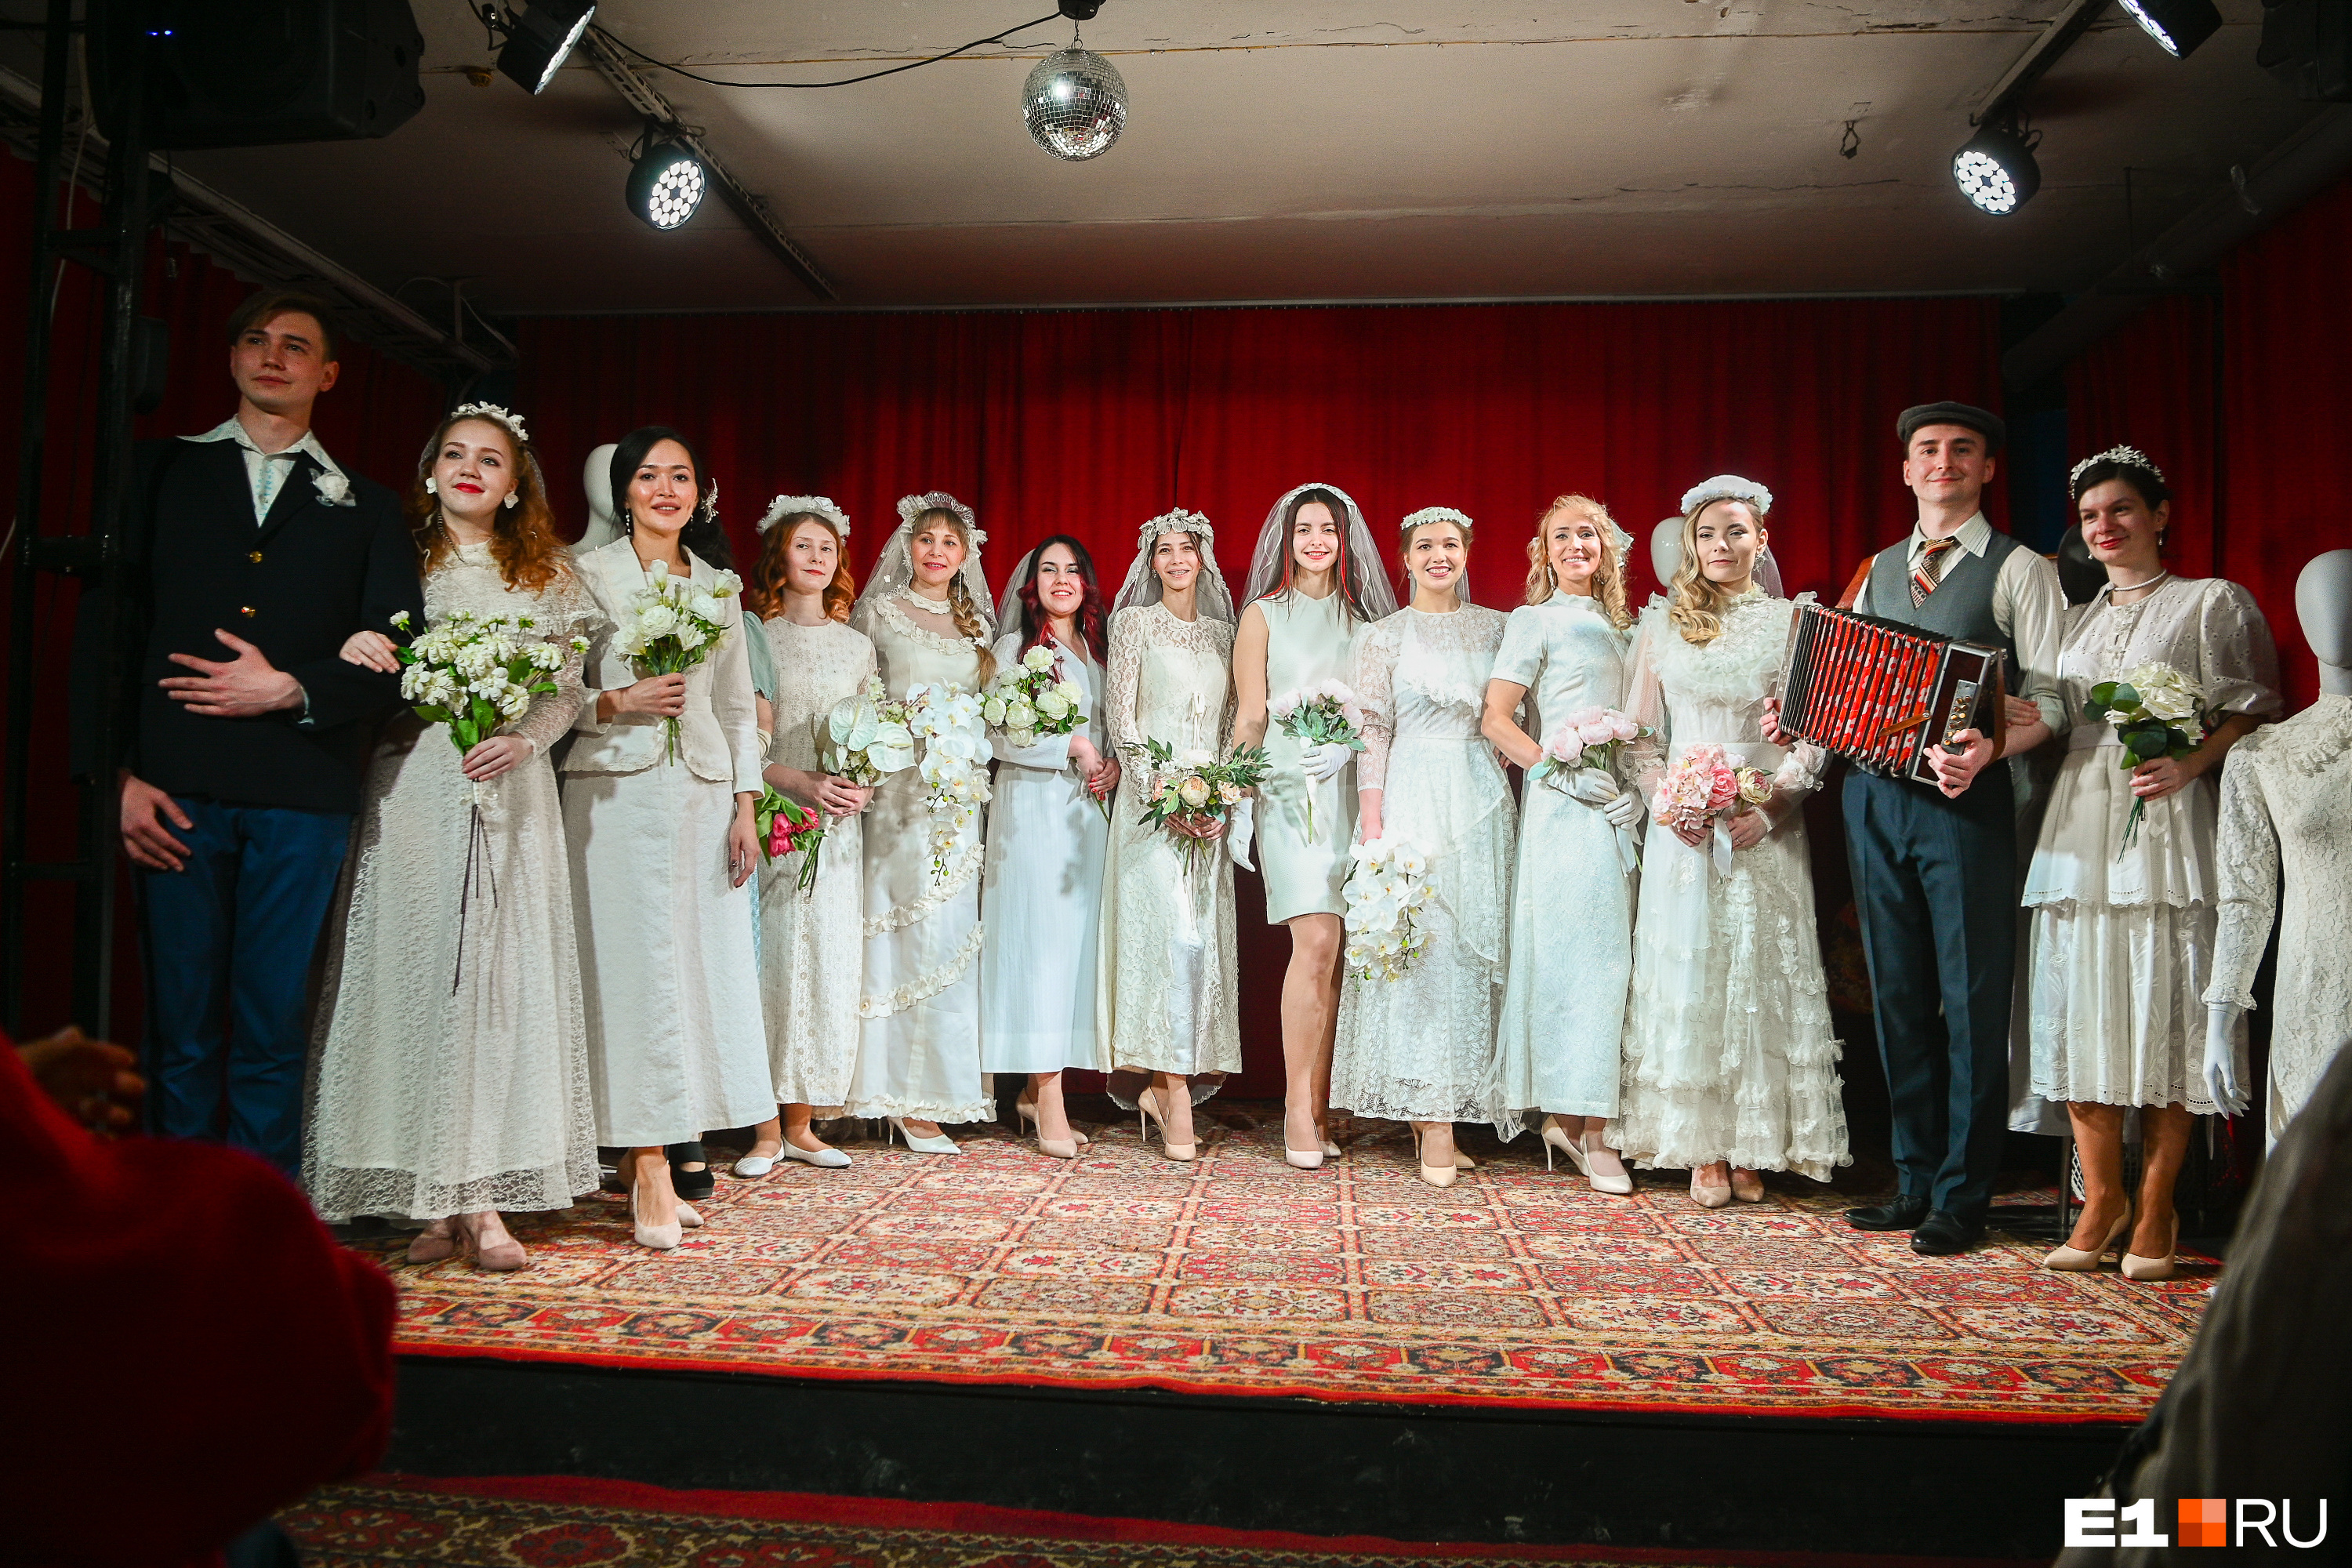 Даже во время дефицита в СССР невесты выглядели роскошно